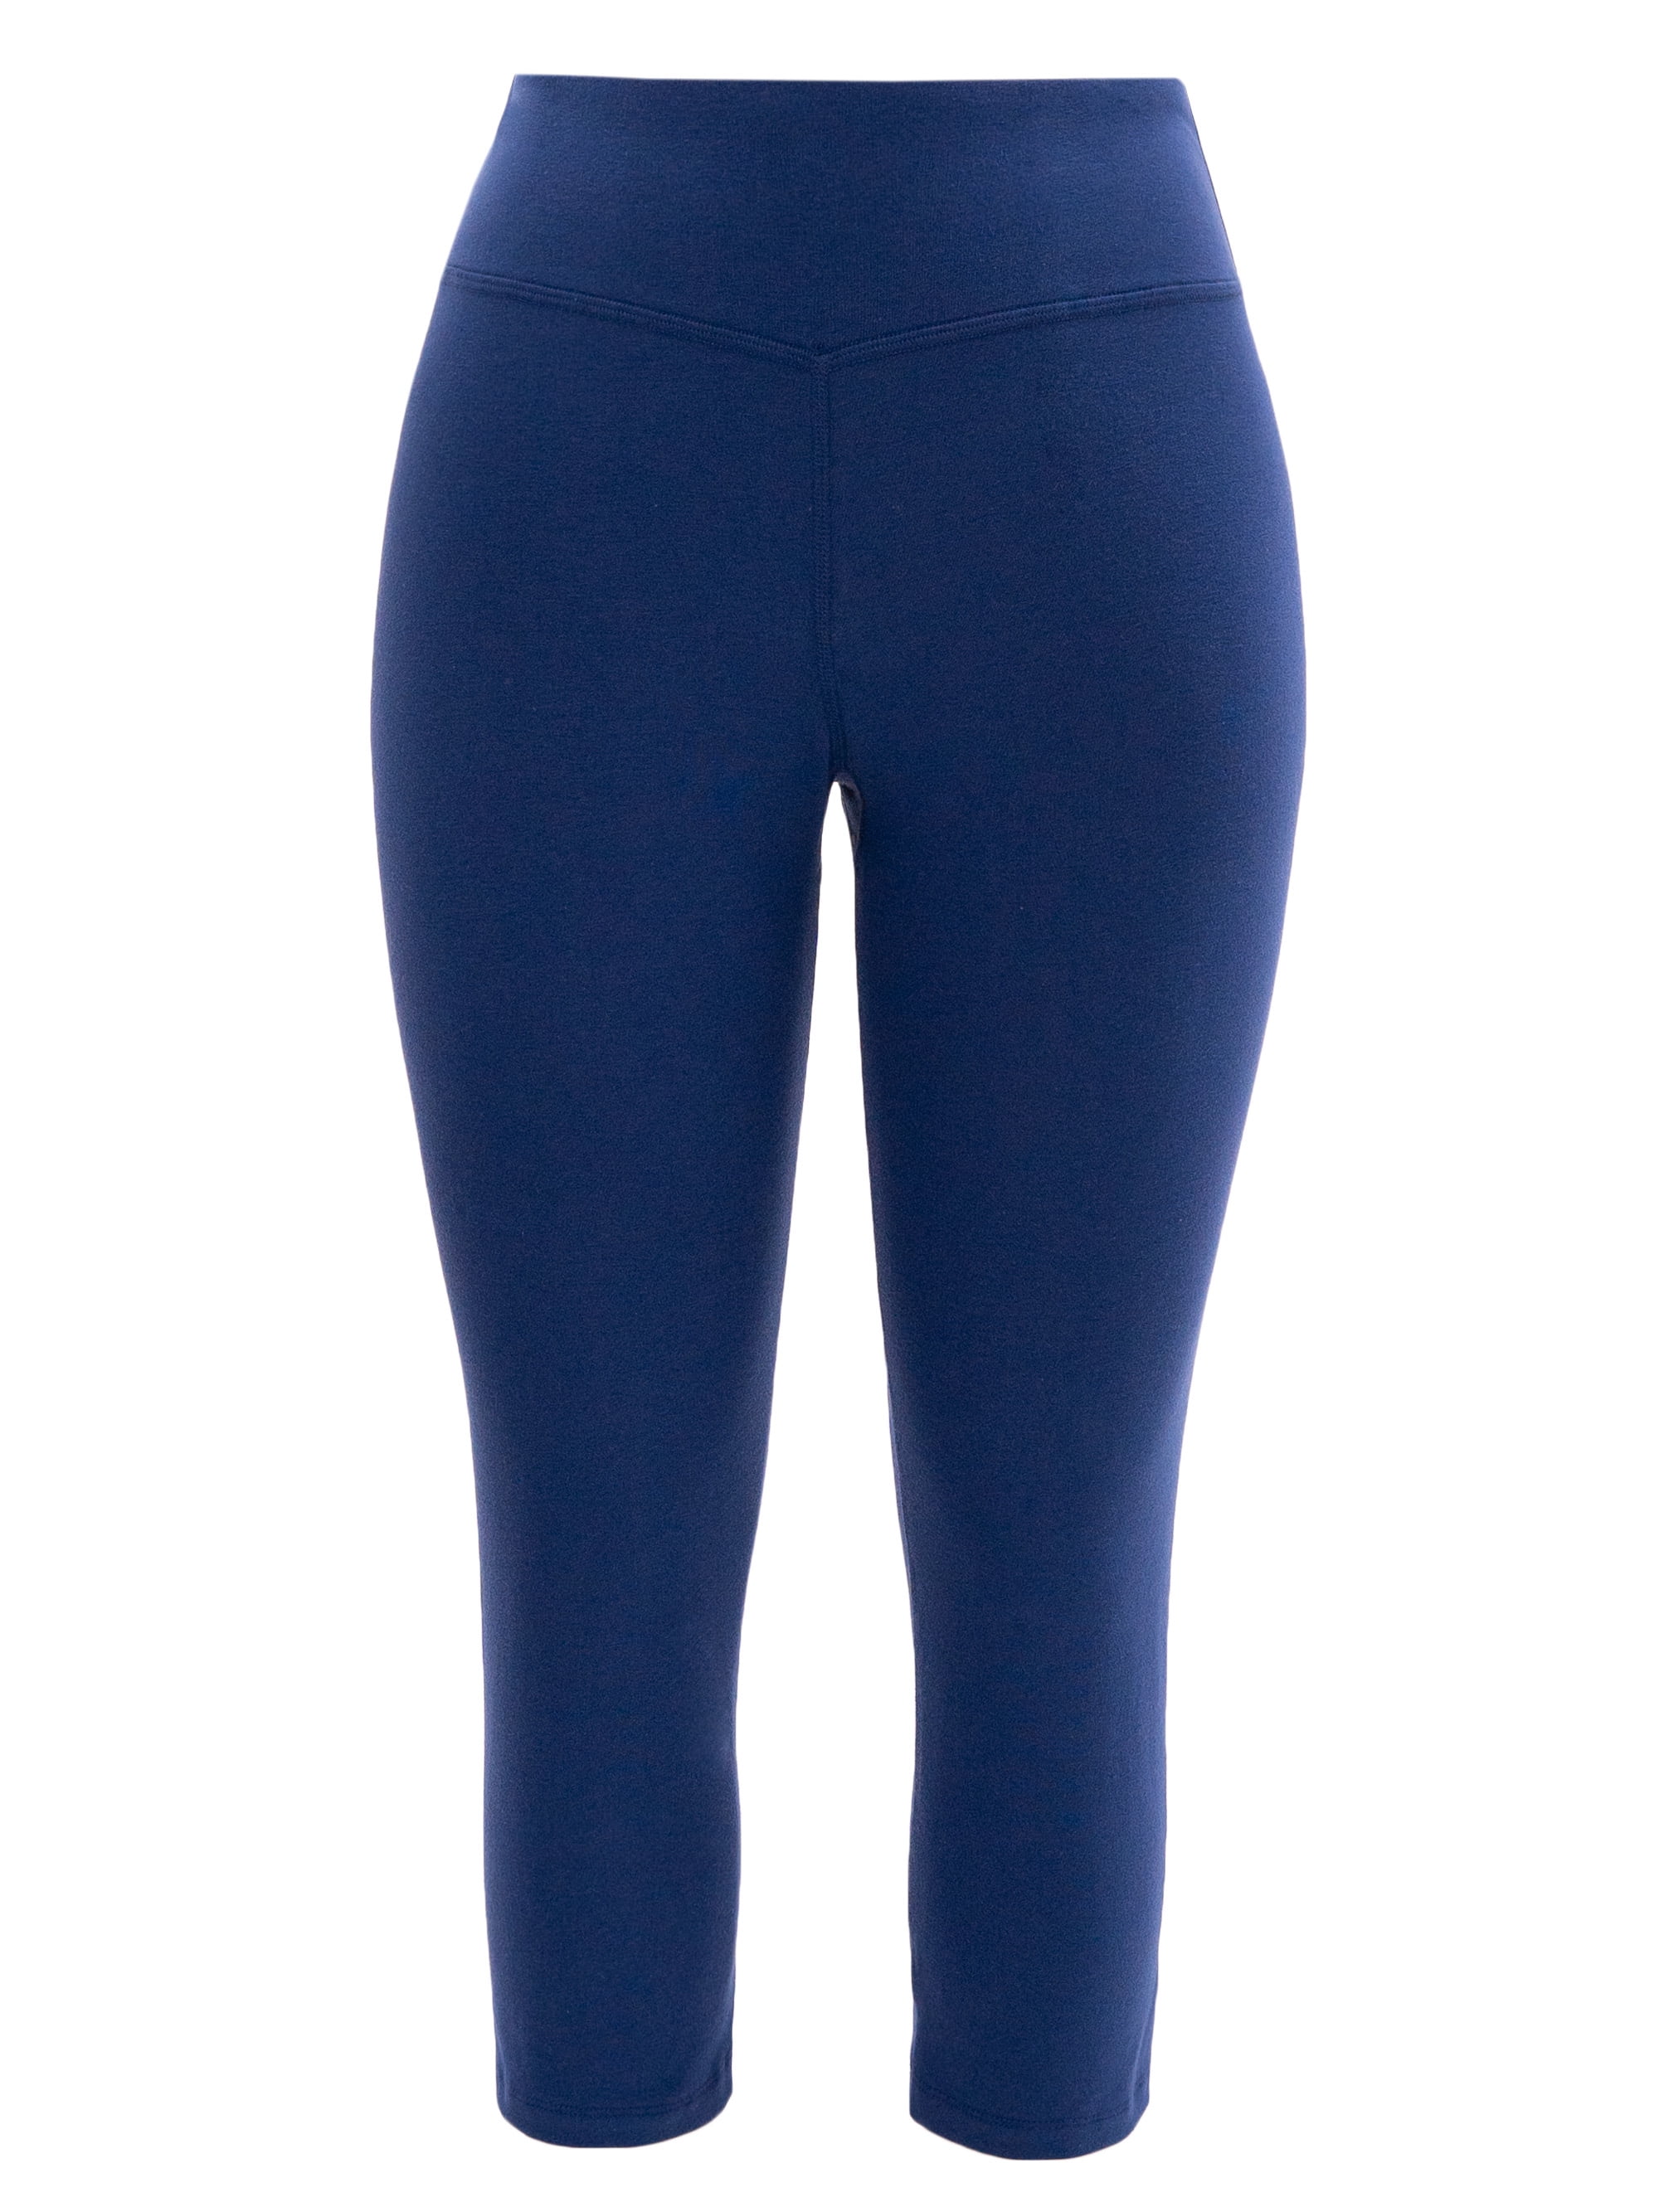 Tek Gear Women's Blue Tie Dye Core High-Waisted Pockets Capri Leggings -  Size S